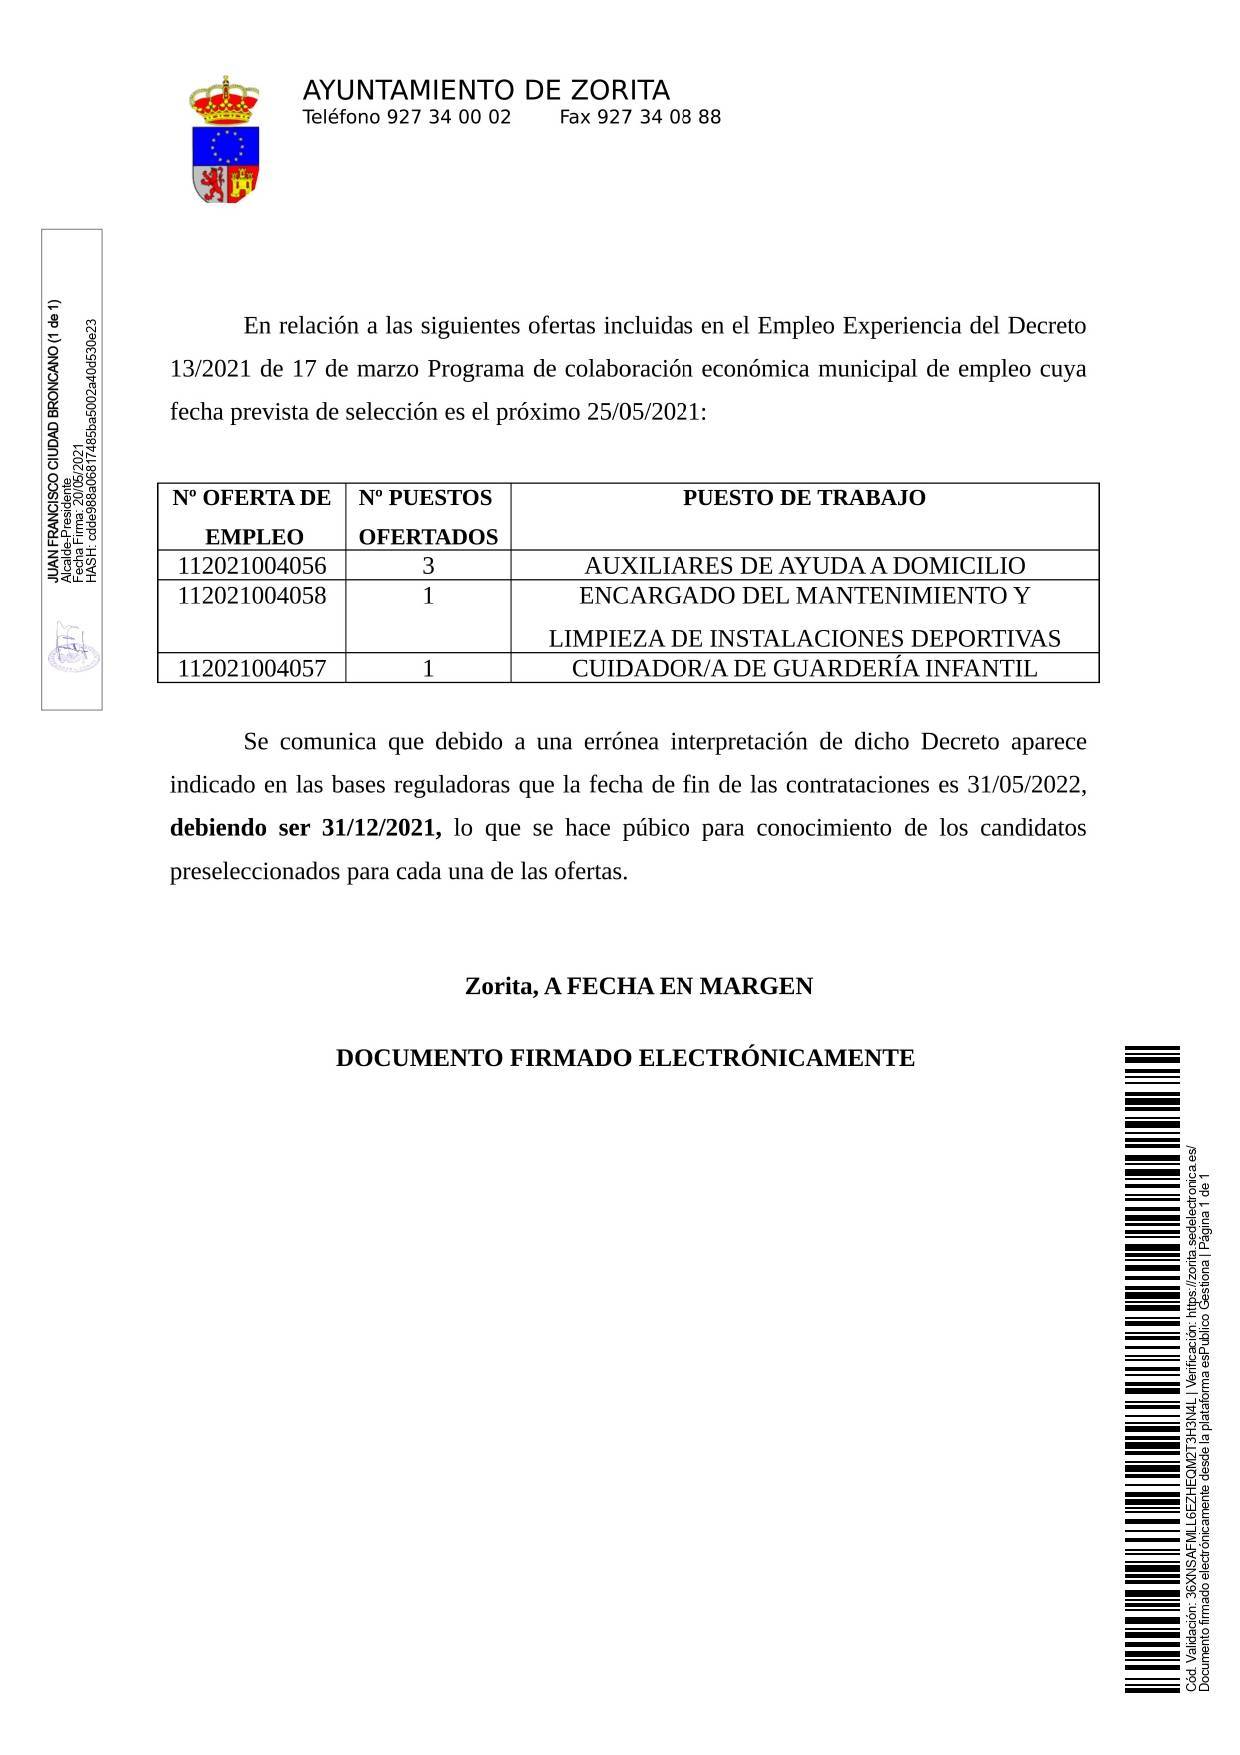 5 puestos de trabajo (2021) - Zorita (Cáceres) 1